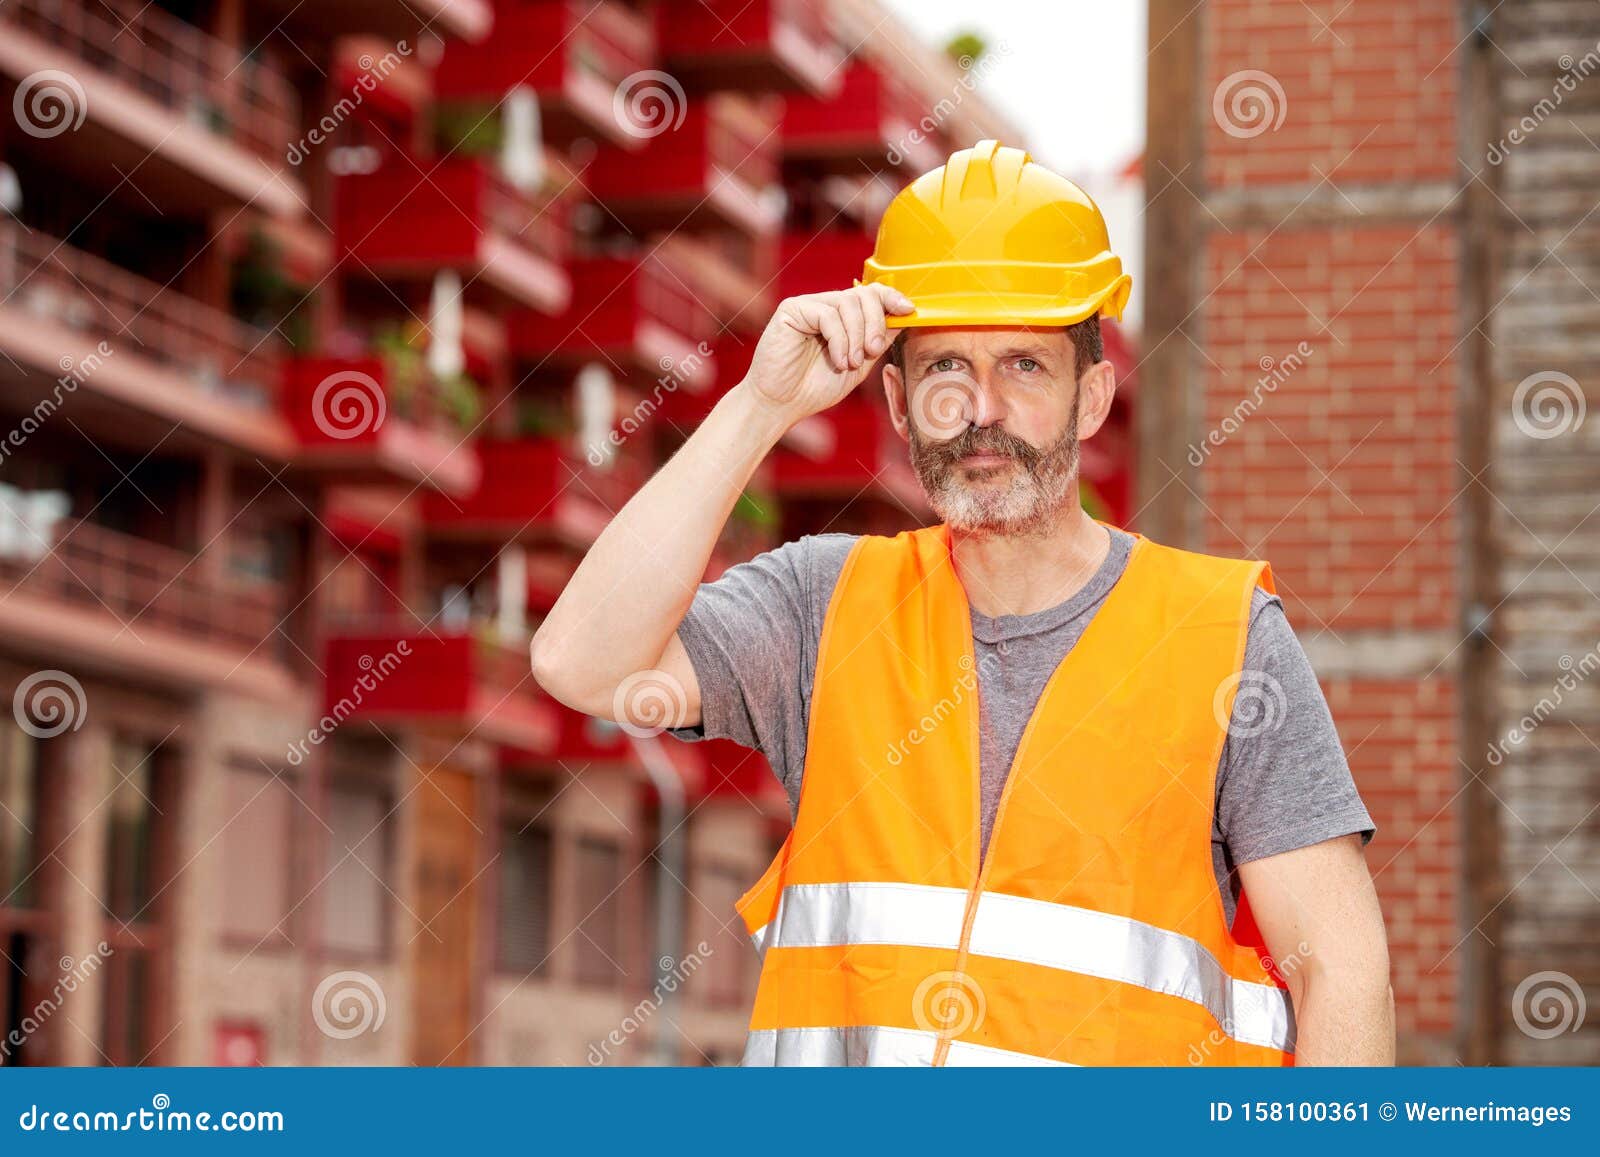 Bauarbeiter Mit Gelbem Sturzhelm Und Orange Weste Stockbild - Bild